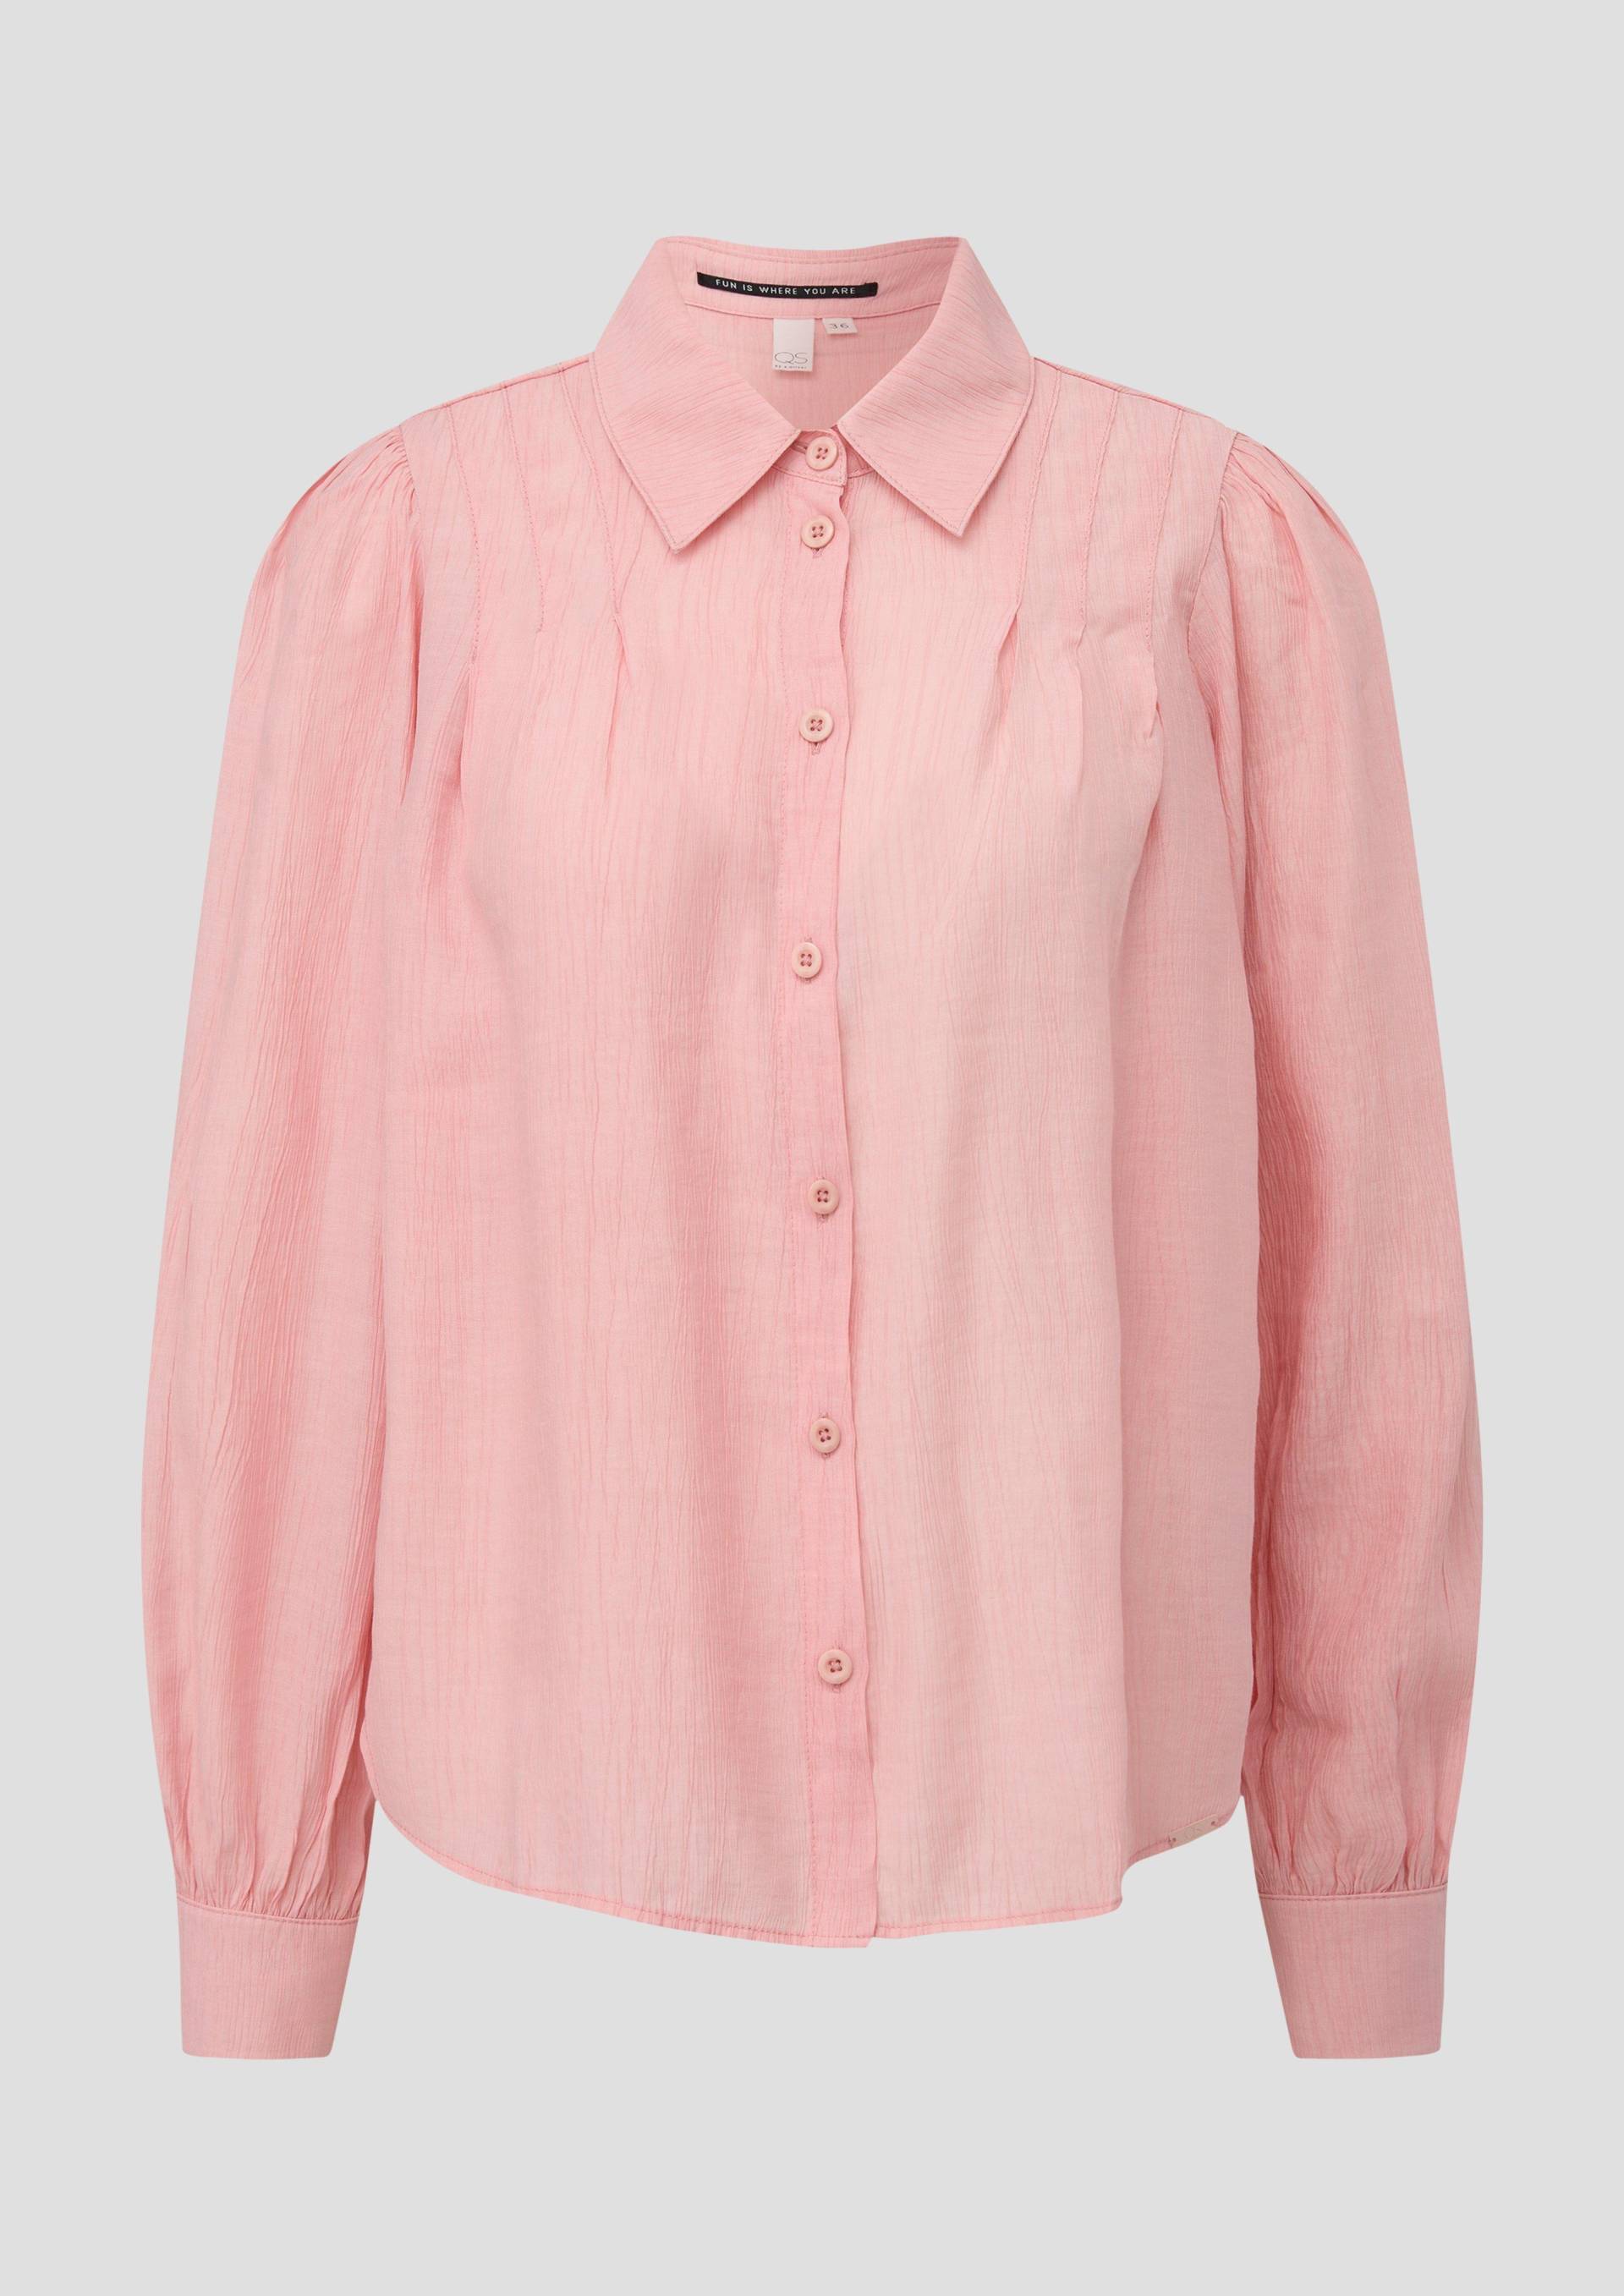 QS - Bluse mit Raffung, Damen, orange|pink von QS